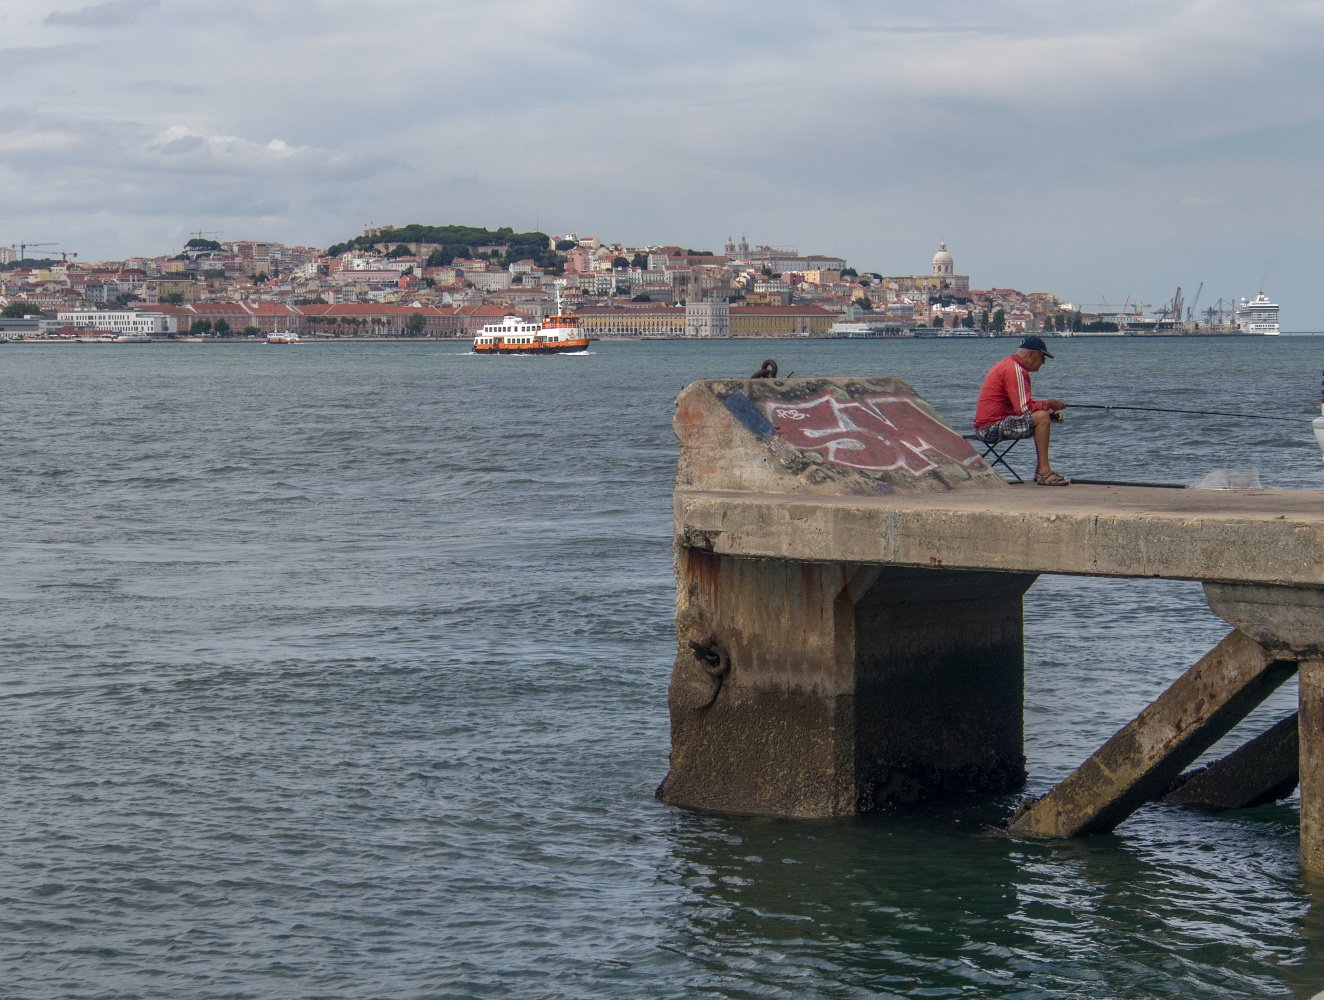 Der TEJO: ein "großes Wasser" zwischen Lissabon und den Alten Kai-Anlagen auf dem gegenüberliegenden Ufer
Foto: Wally Raths